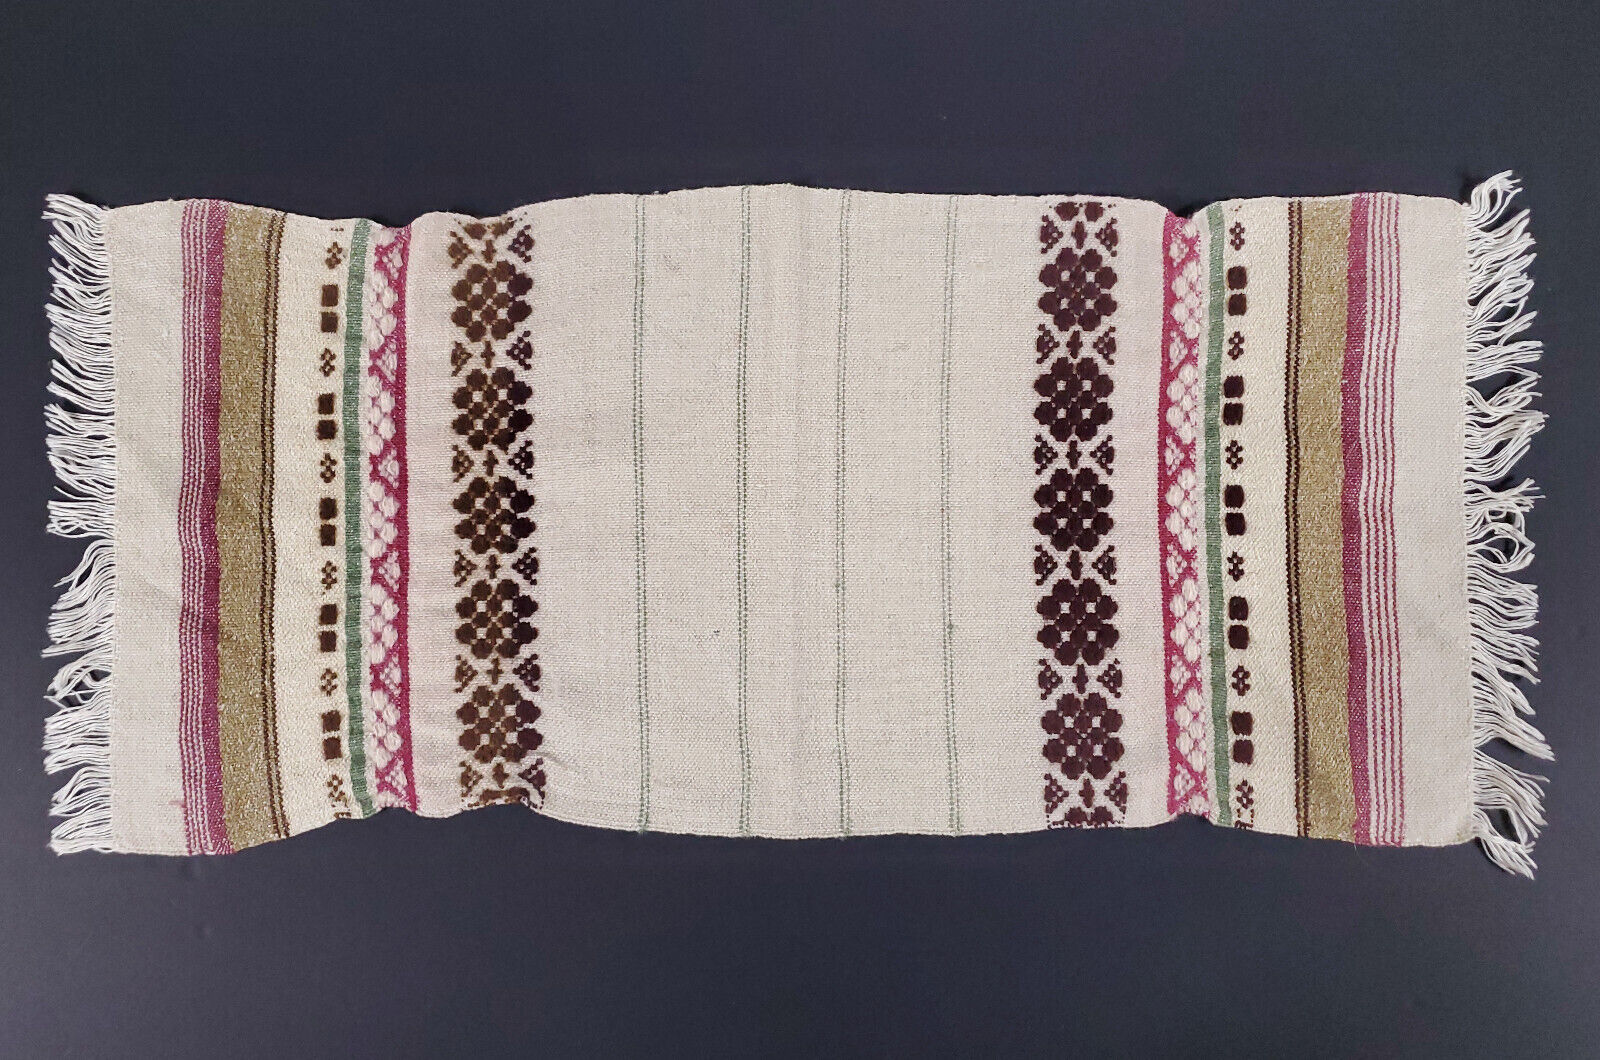 Vintage European handmade wool runner Scandinavian woven design textile east art